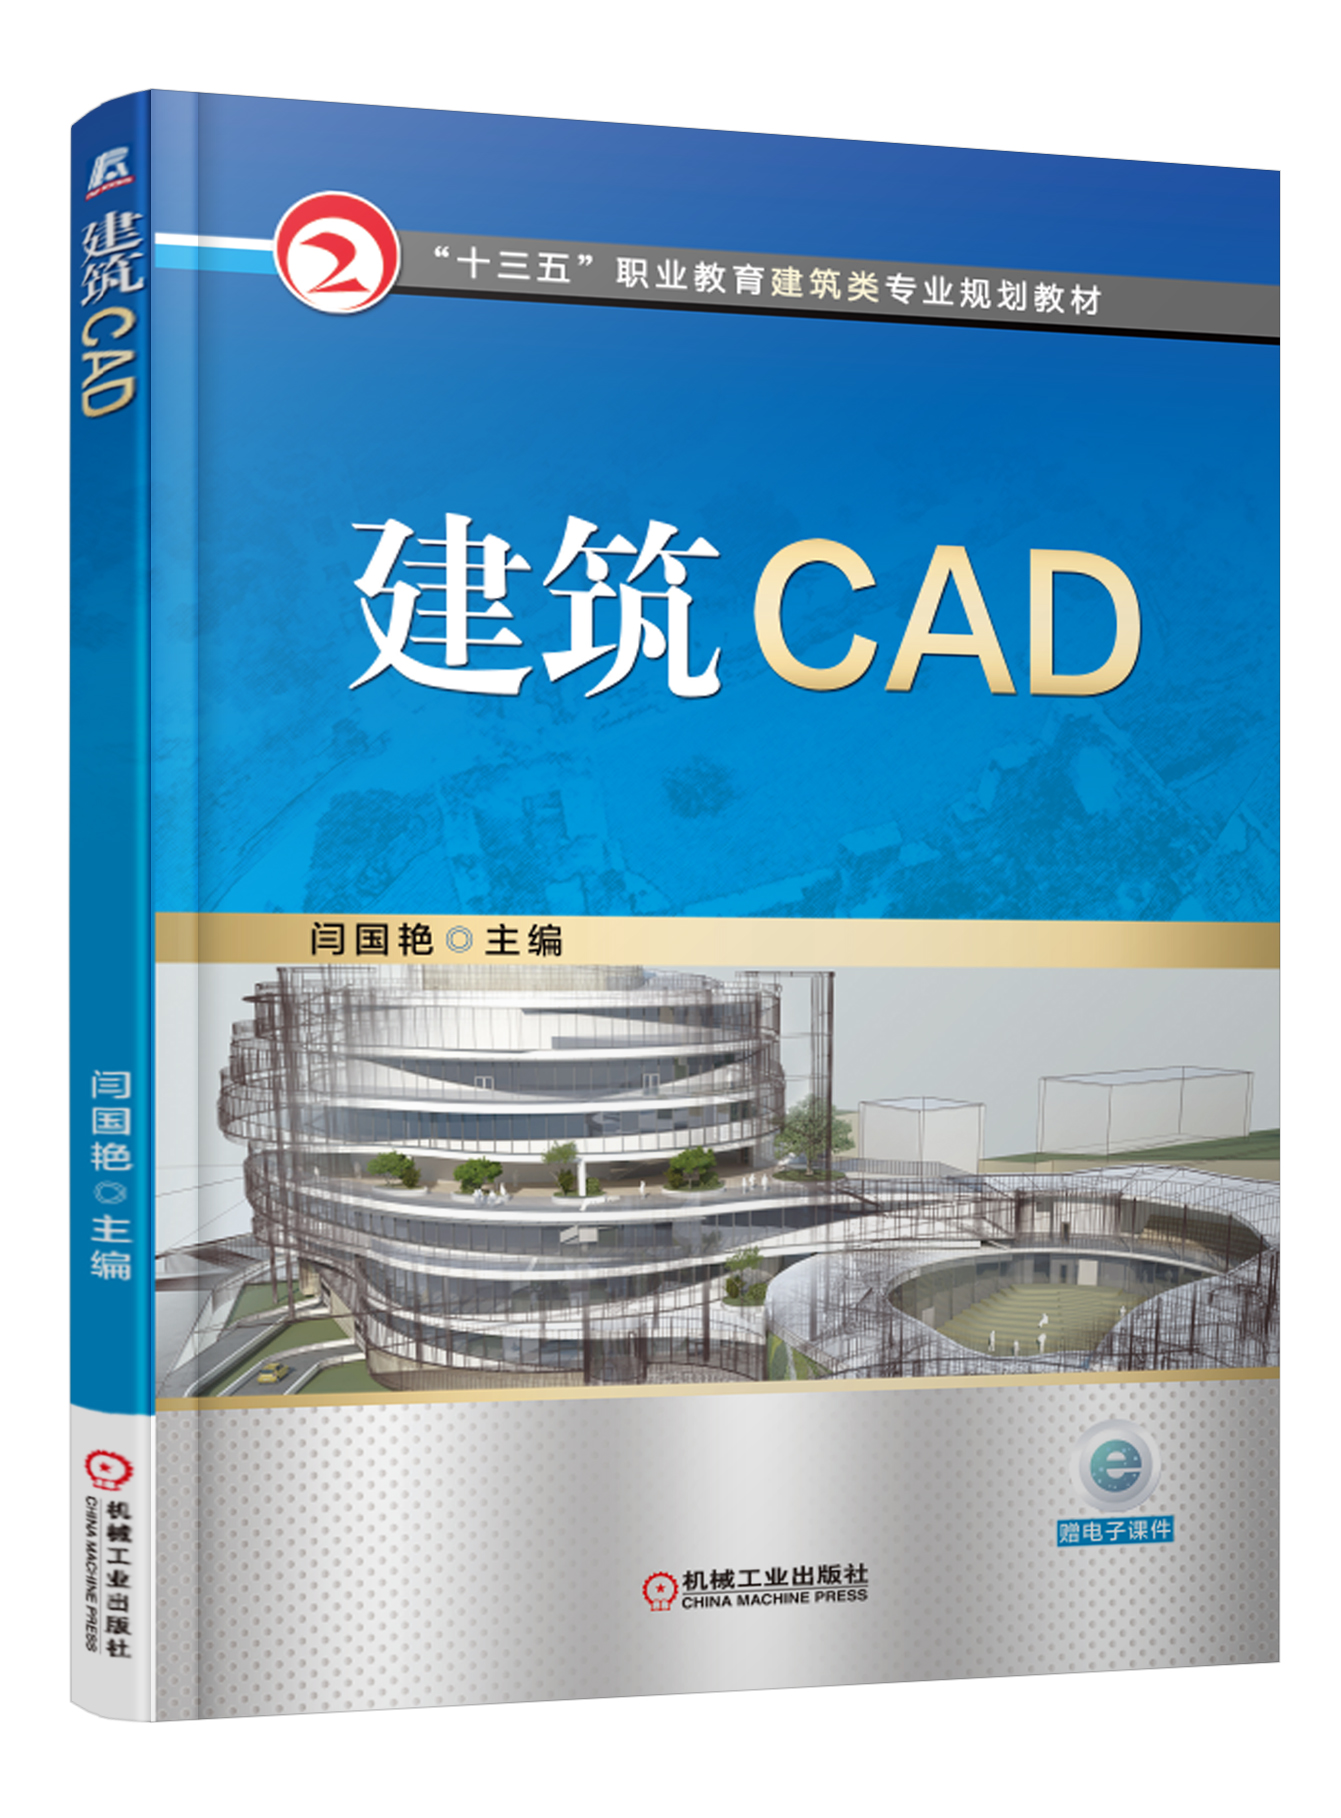 建築CAD(機械工業出版社2016年版閆國艷主編書籍)